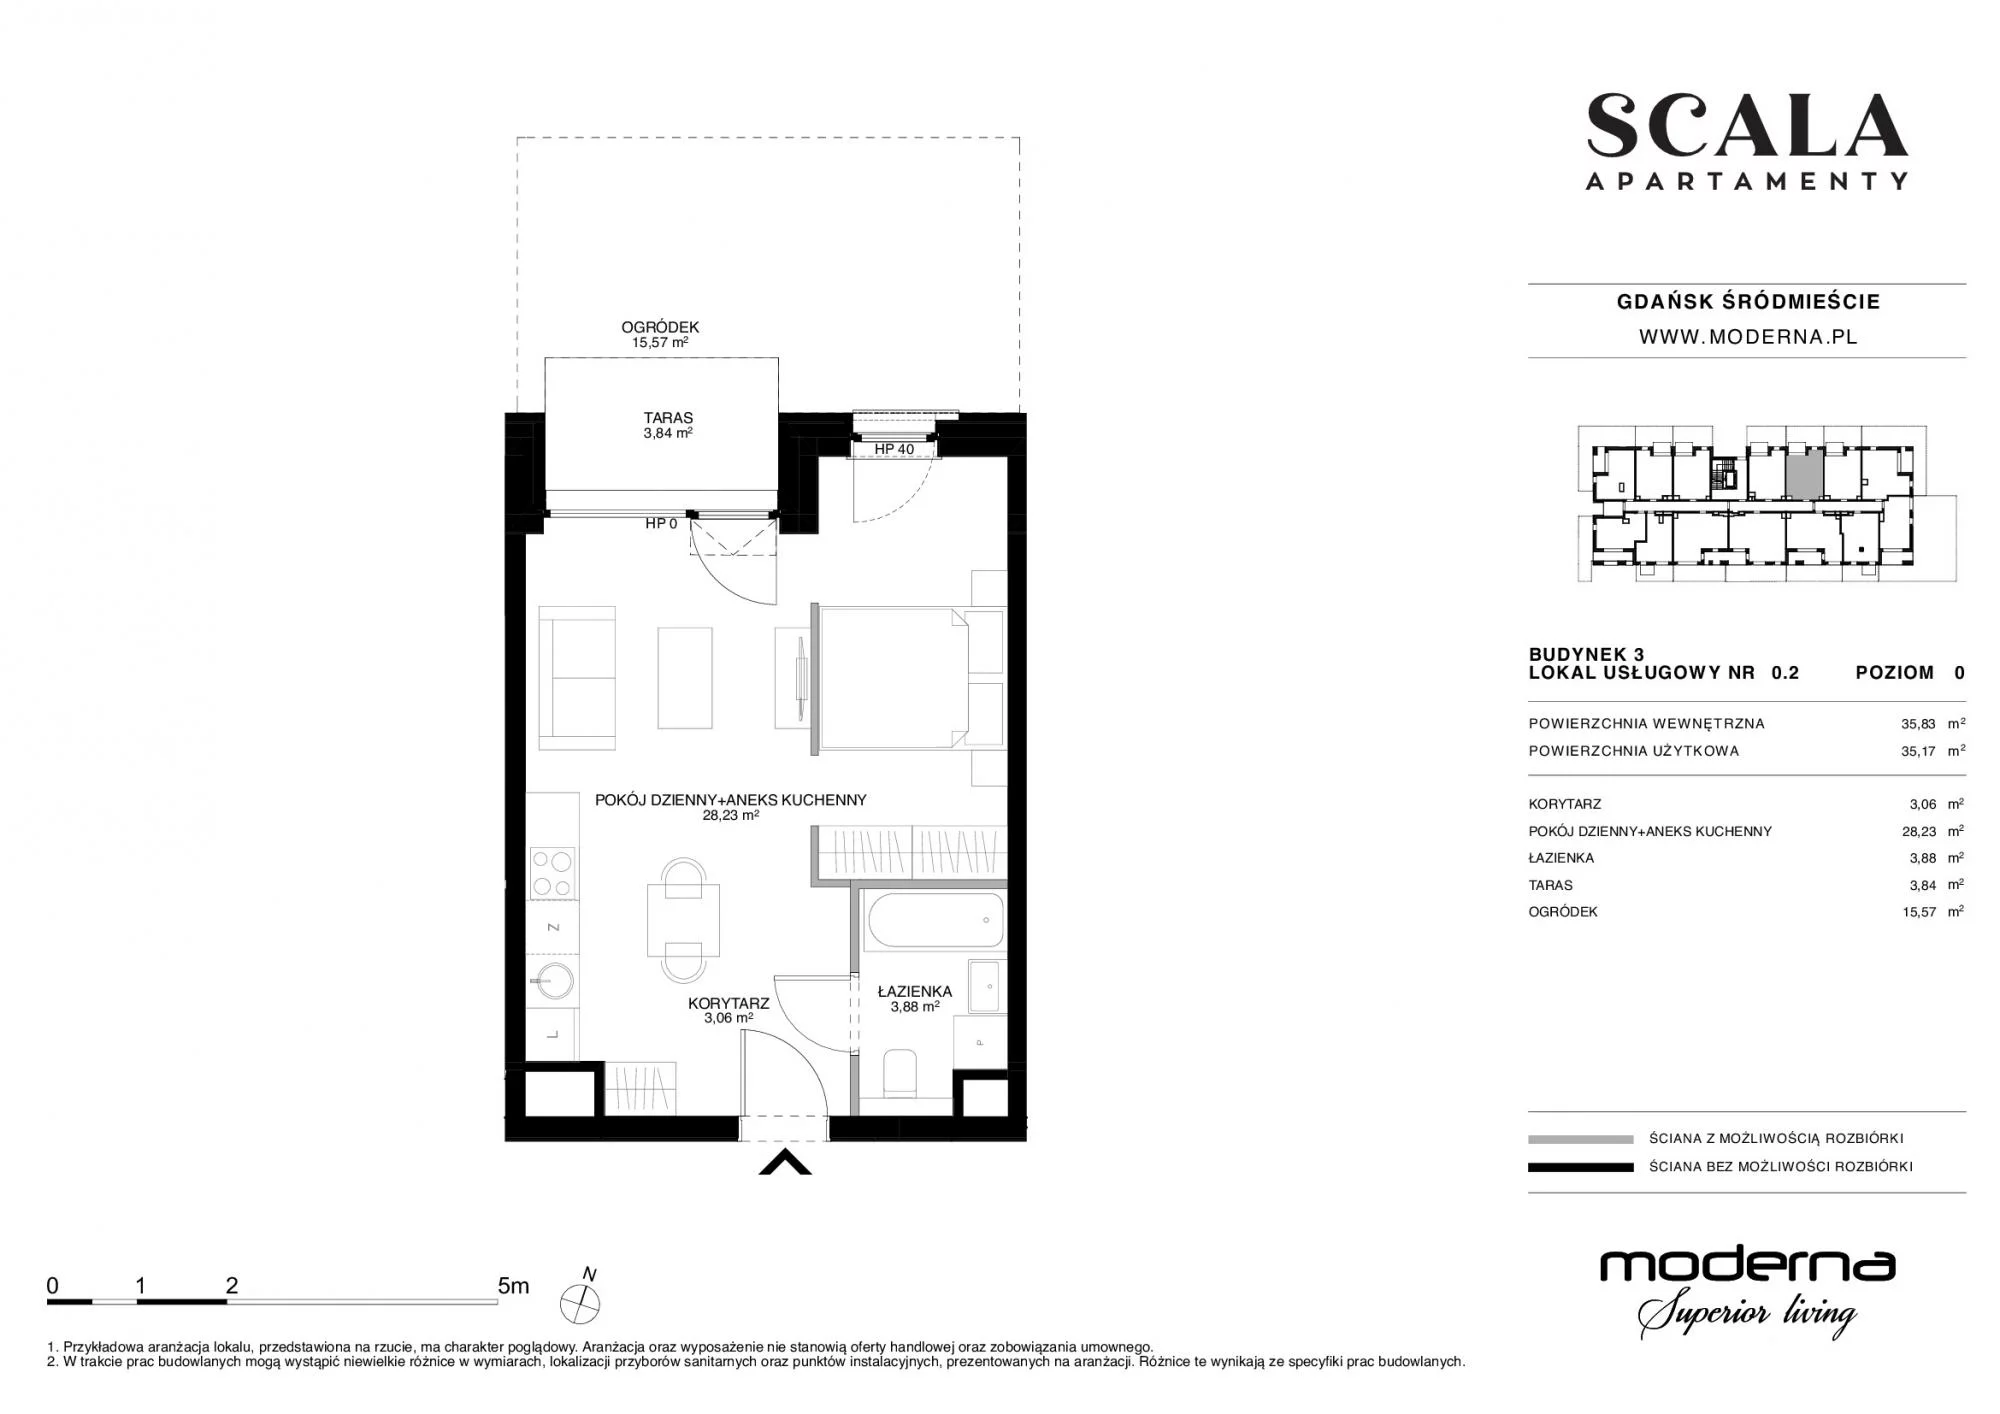 Apartament 35,34 m², parter, oferta nr 3-0.2., Scala, Gdańsk, Śródmieście, ul. Łąkowa 60C